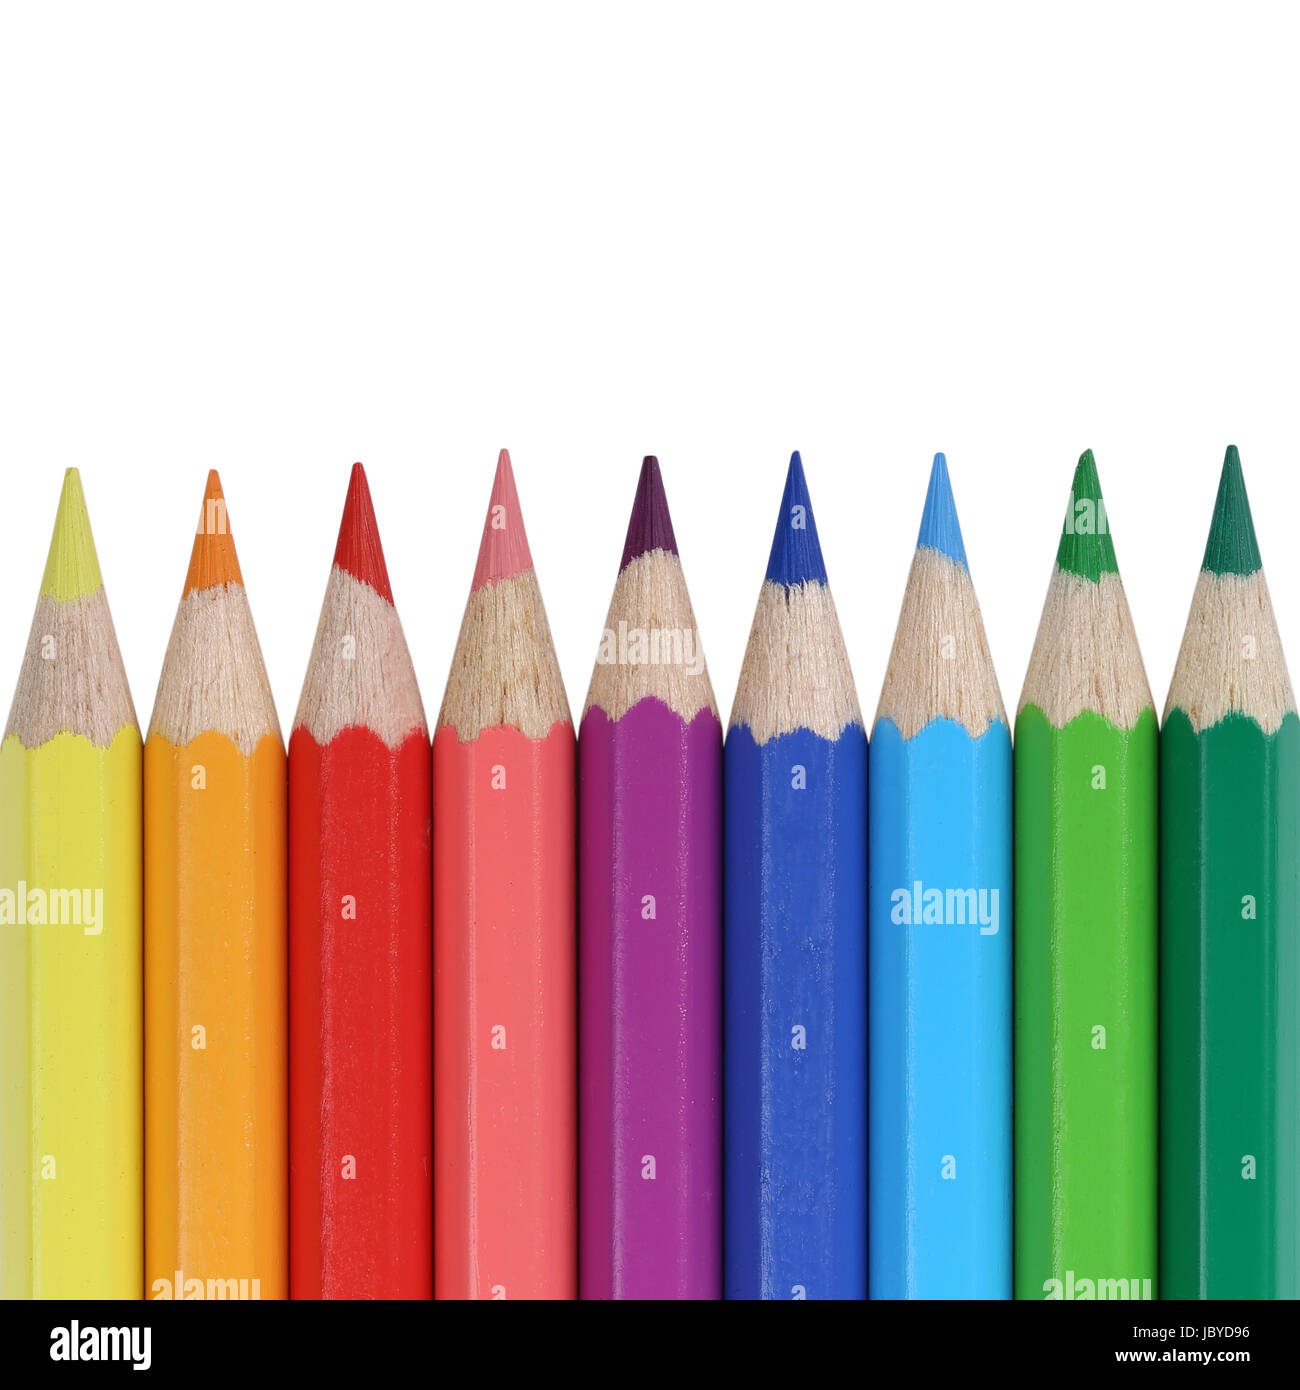 Buntstifte für die Schule in einer Reihe mit Textfreiraum, isoliert vor einem weissen Hintergrund Stock Photo